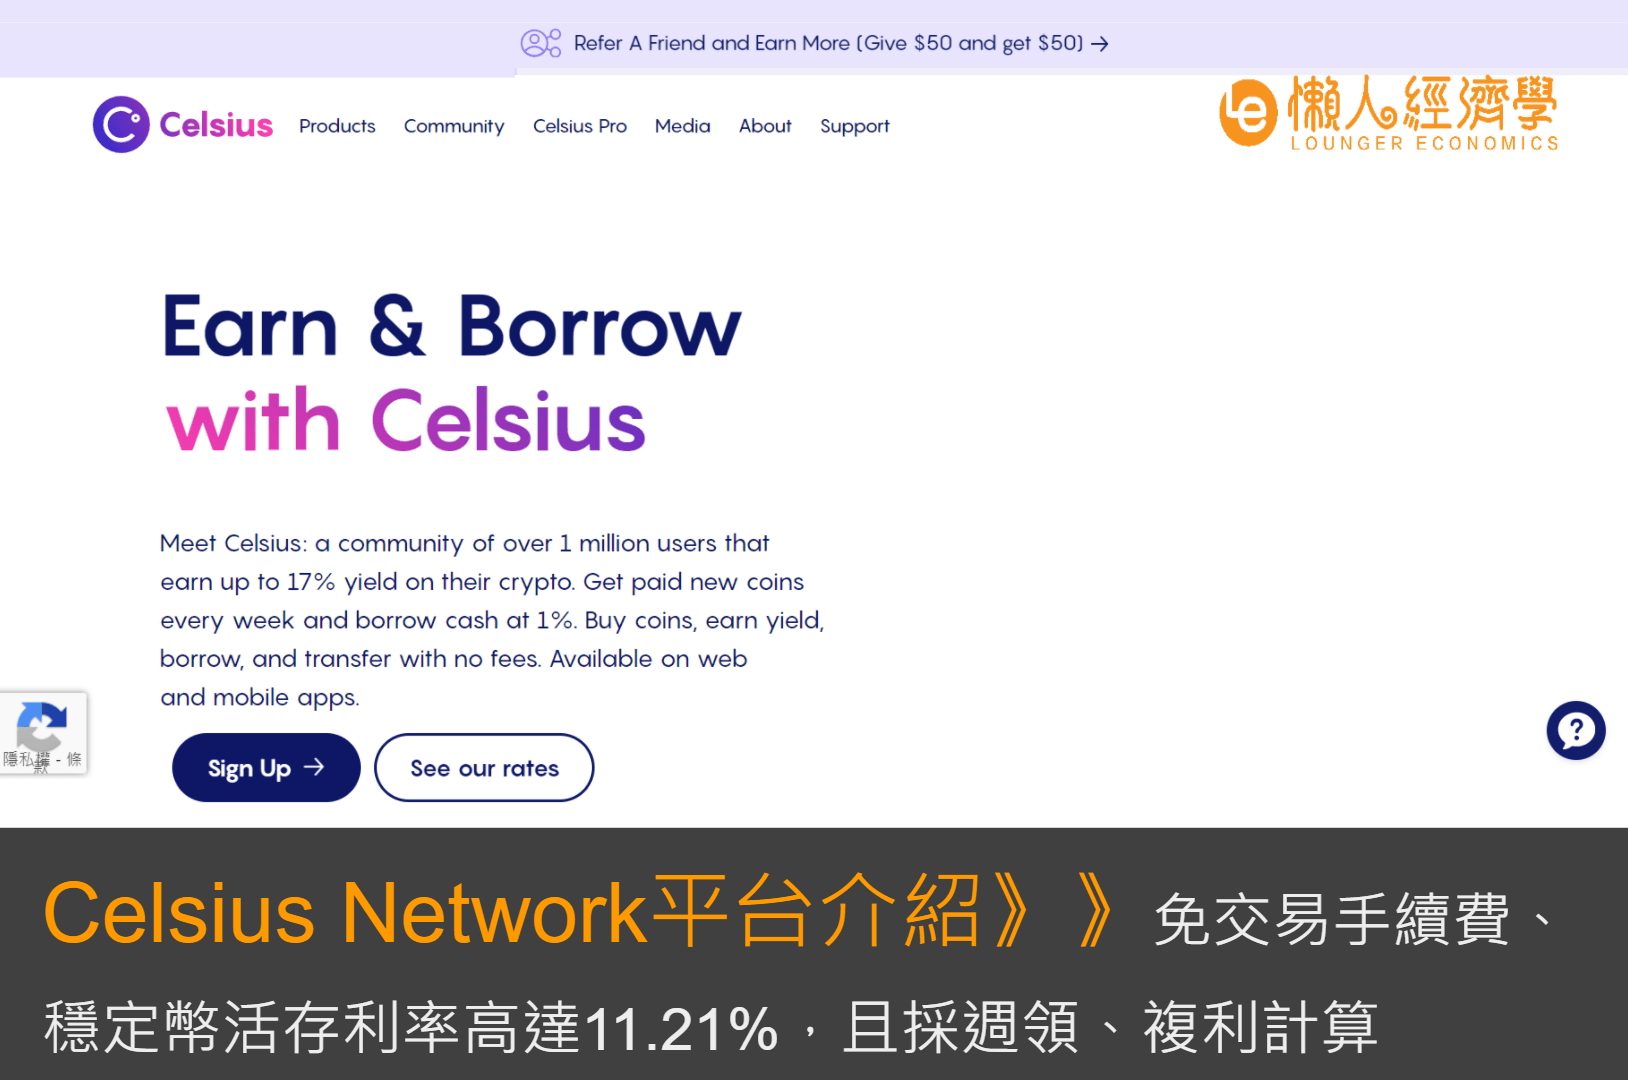 Celsius Network平台介紹：免交易手續費、穩定幣活存利率高達11.21%，採週領、複利計算